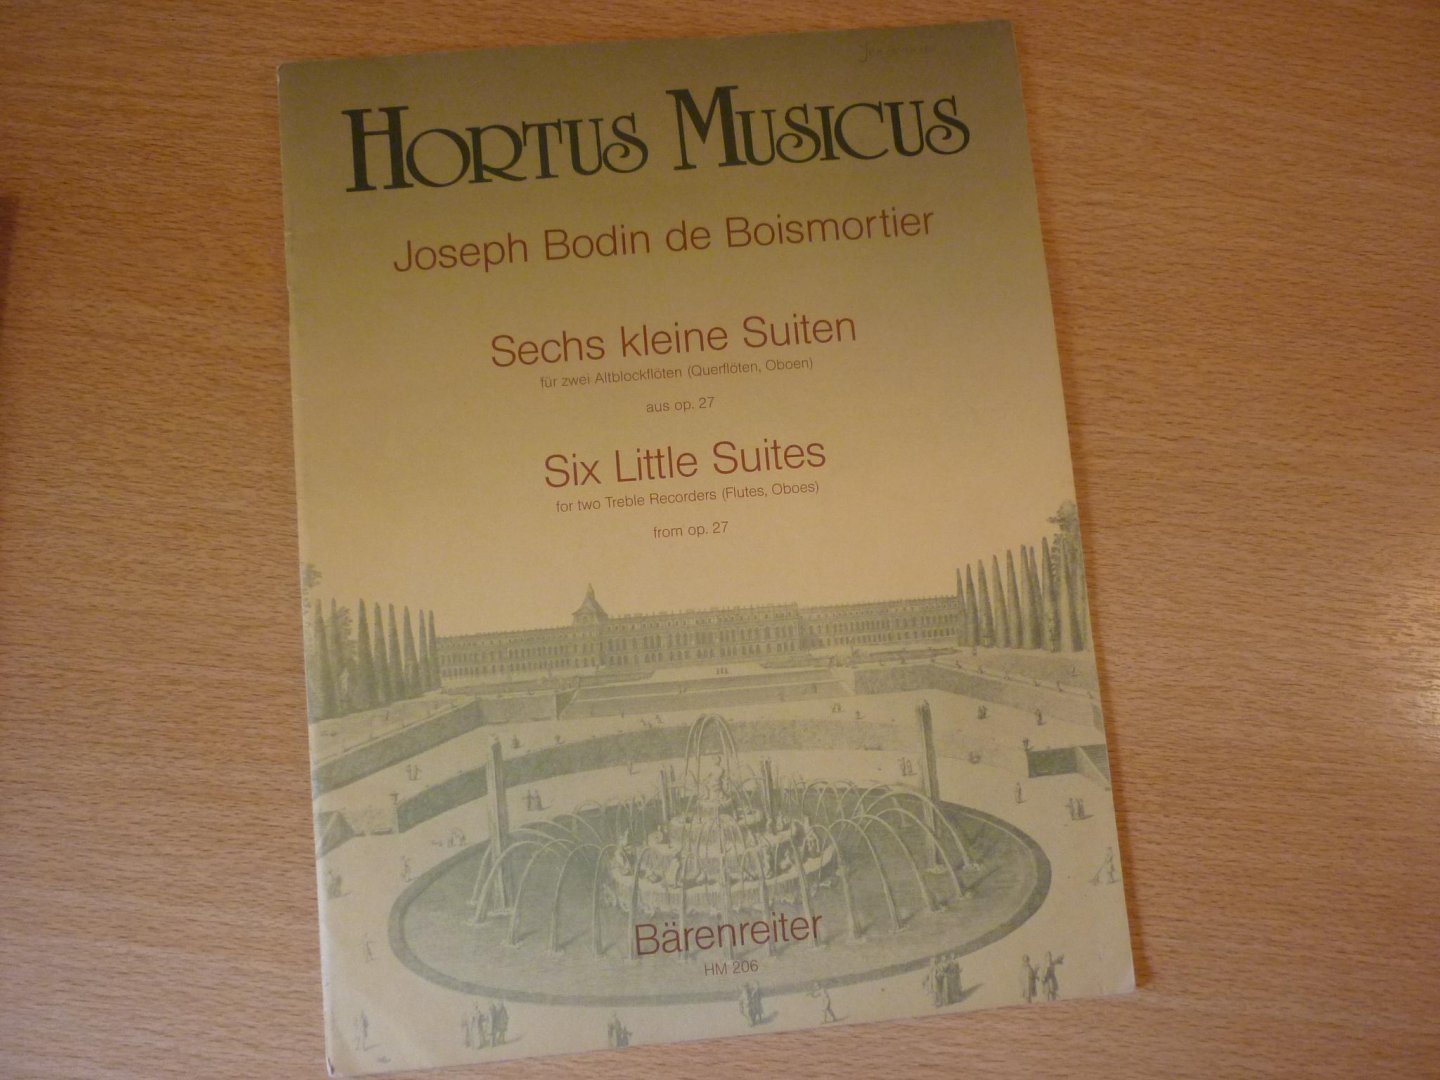 Boismortier, Joseph Bodin de - Sechs kleine Suiten, aus Opus 27